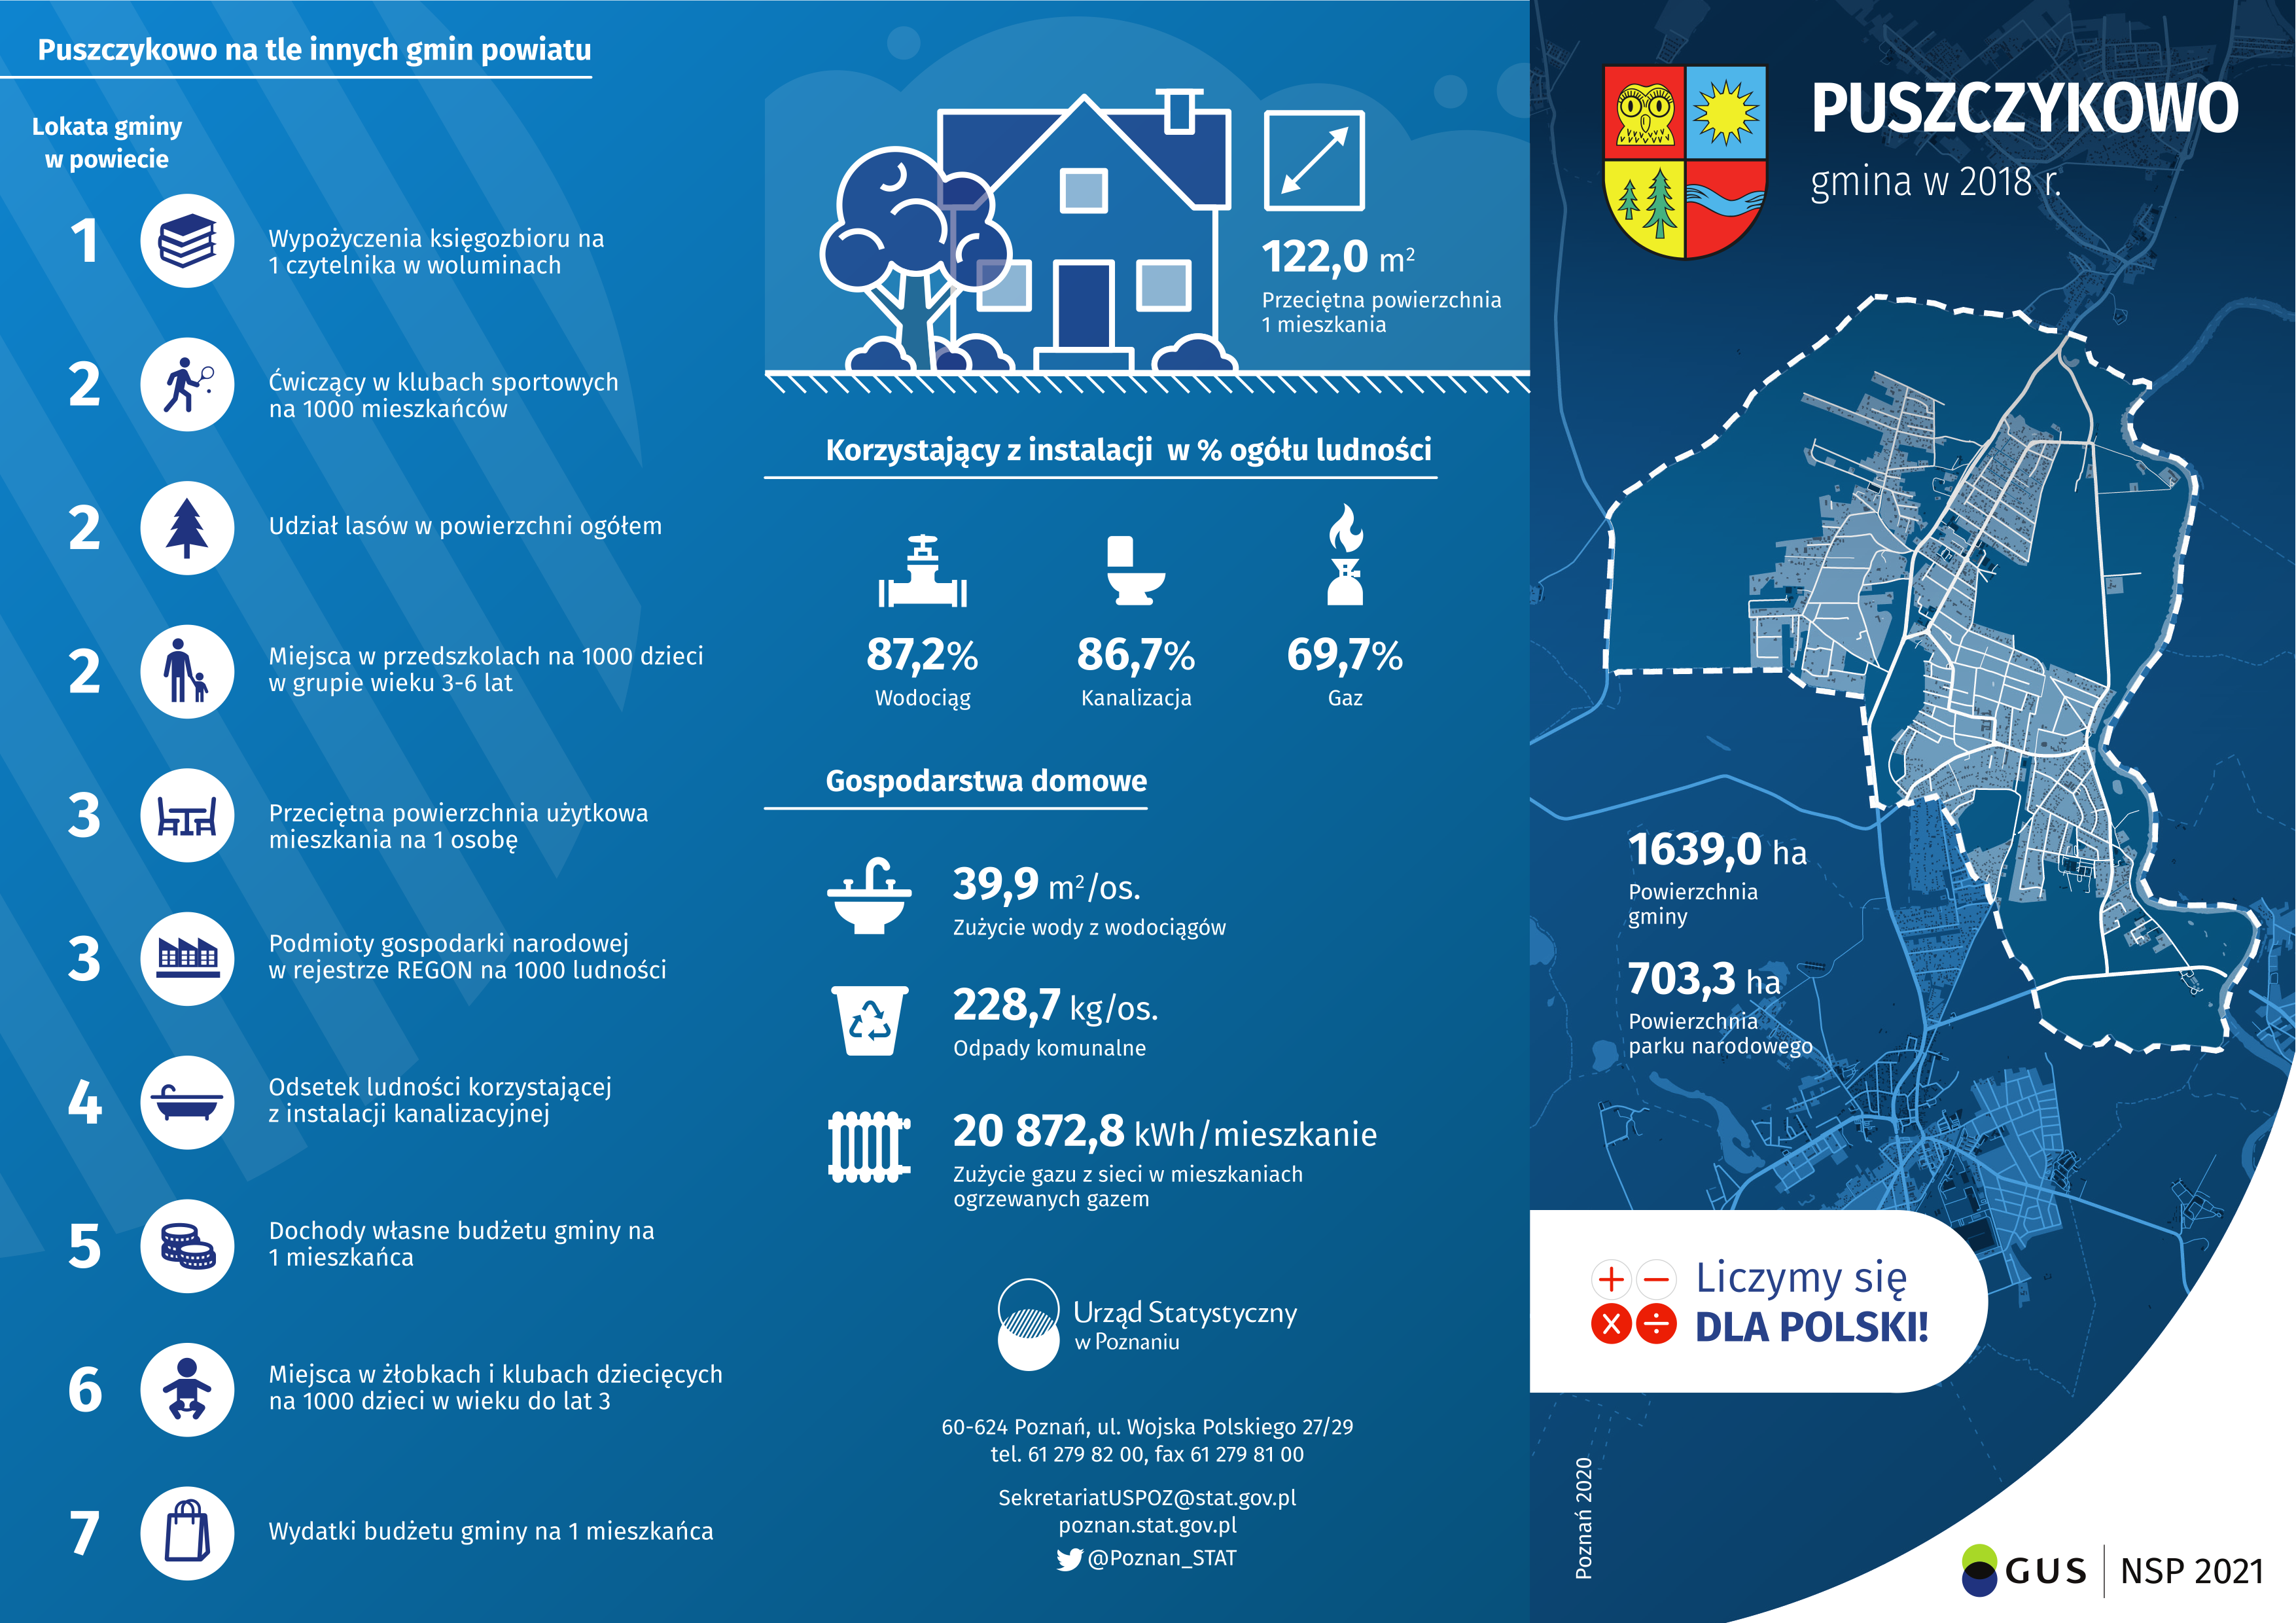 Infografika przedstawiająca dane dotyczące gminy Puszczykowo w 2018 r.